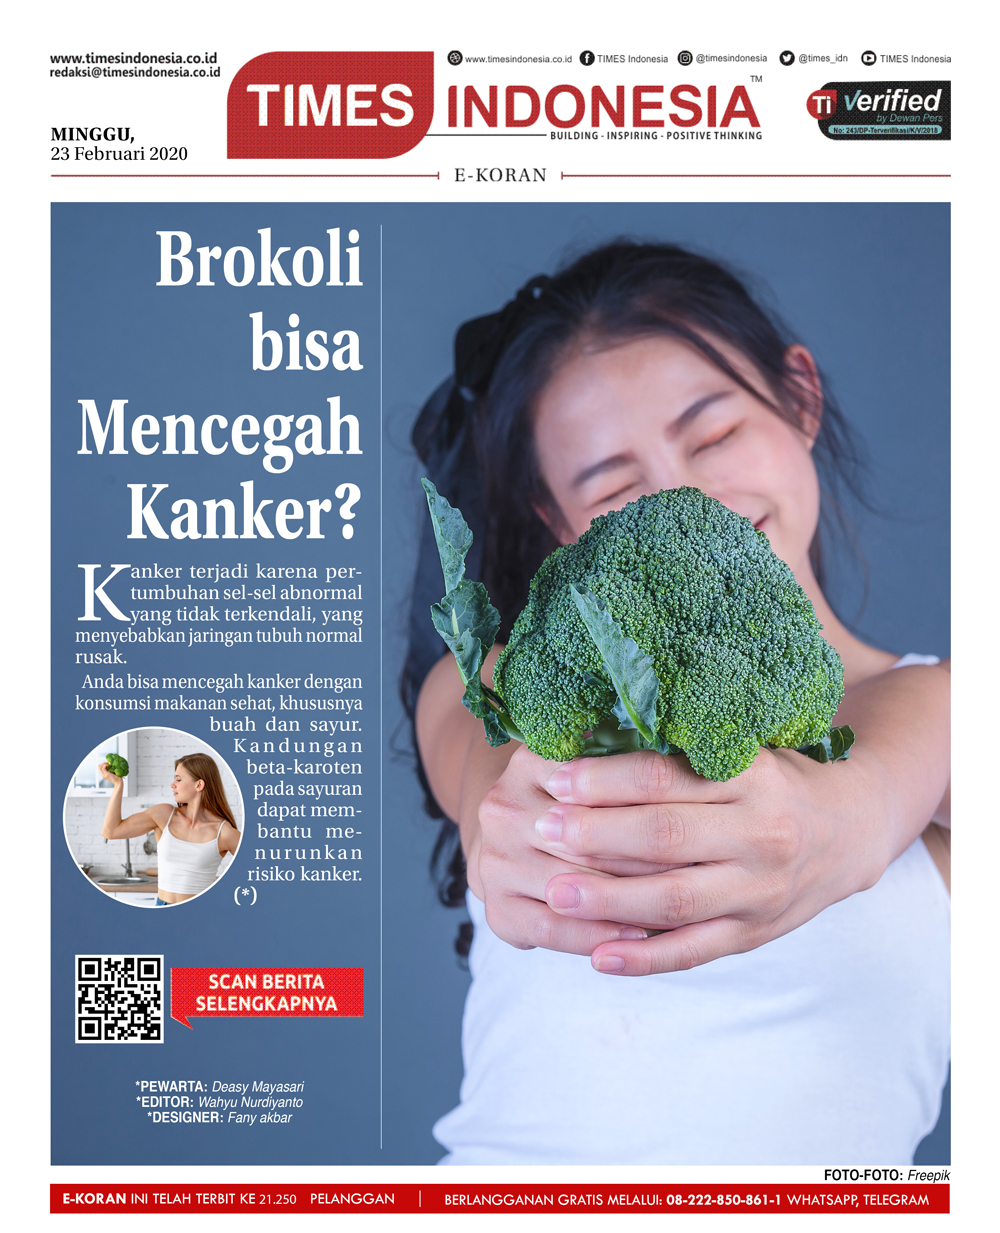 Edisi-Minggu-23-Februari-2020-brokoli.jpg